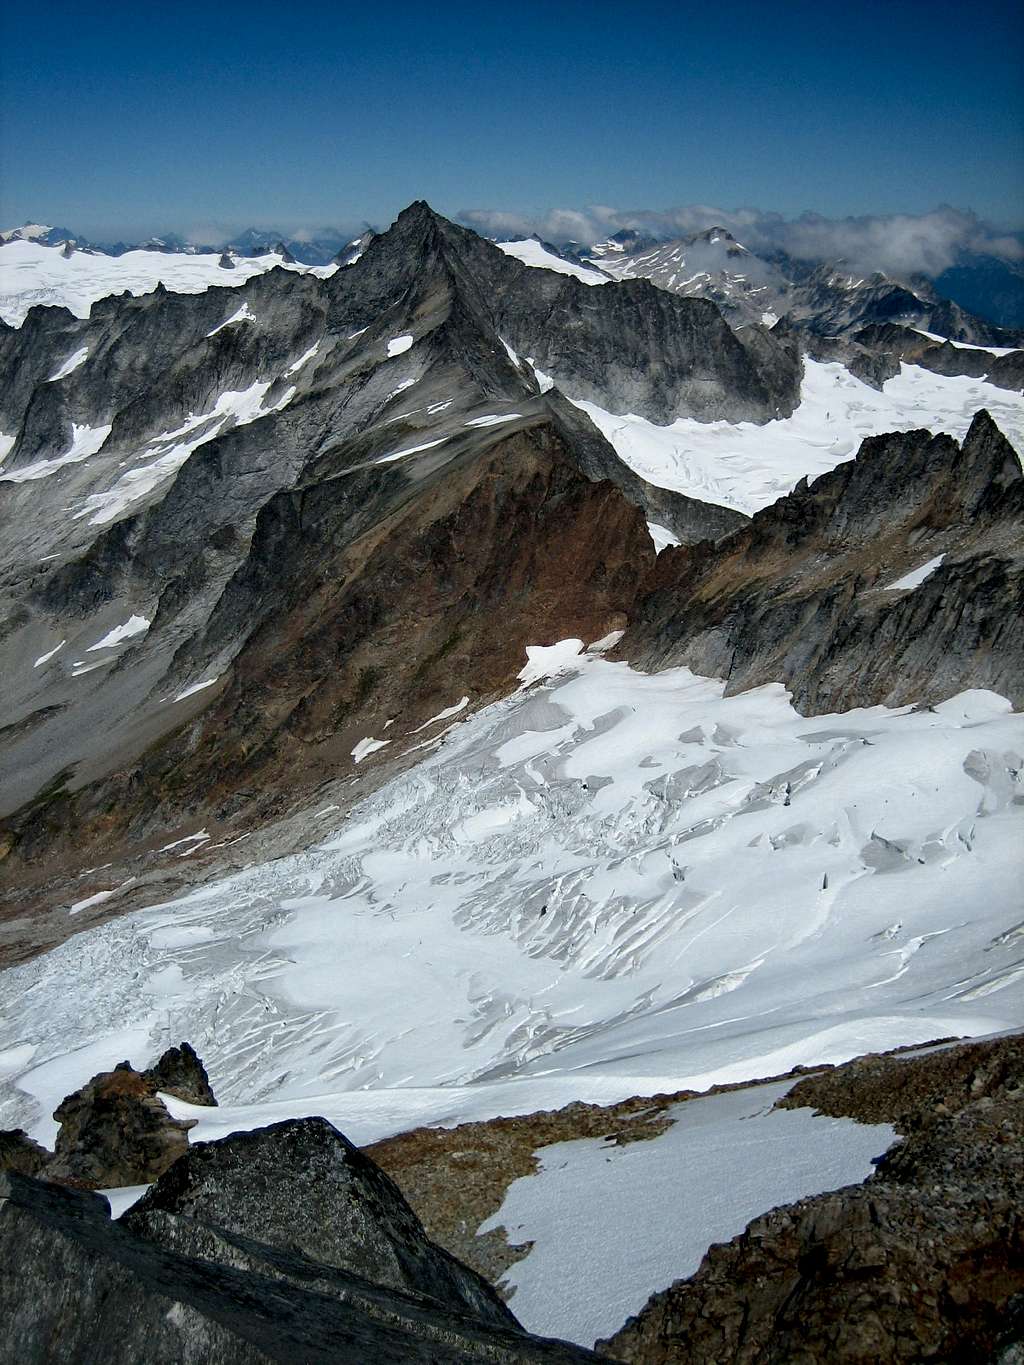 Forbidden Peak and the Quien Sabe Glacier